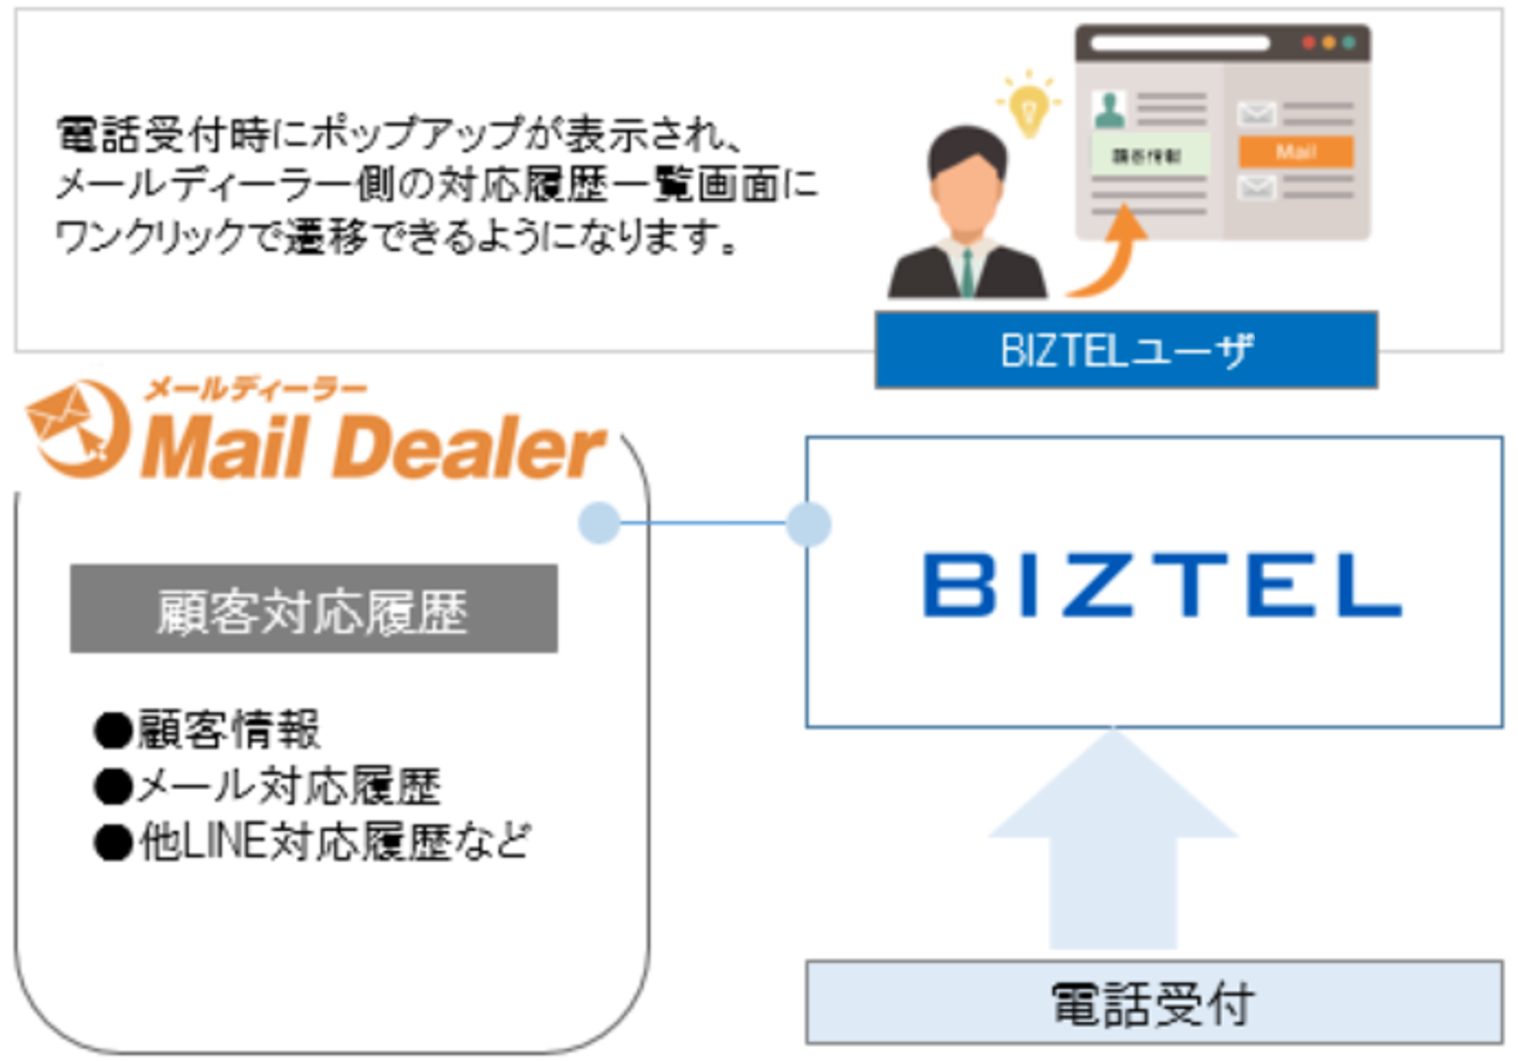 新サービス クラウド型コールセンターシステム Biztel が メール共有 管理システム メールディーラー との連携を開始 株式会社 リンクのプレスリリース